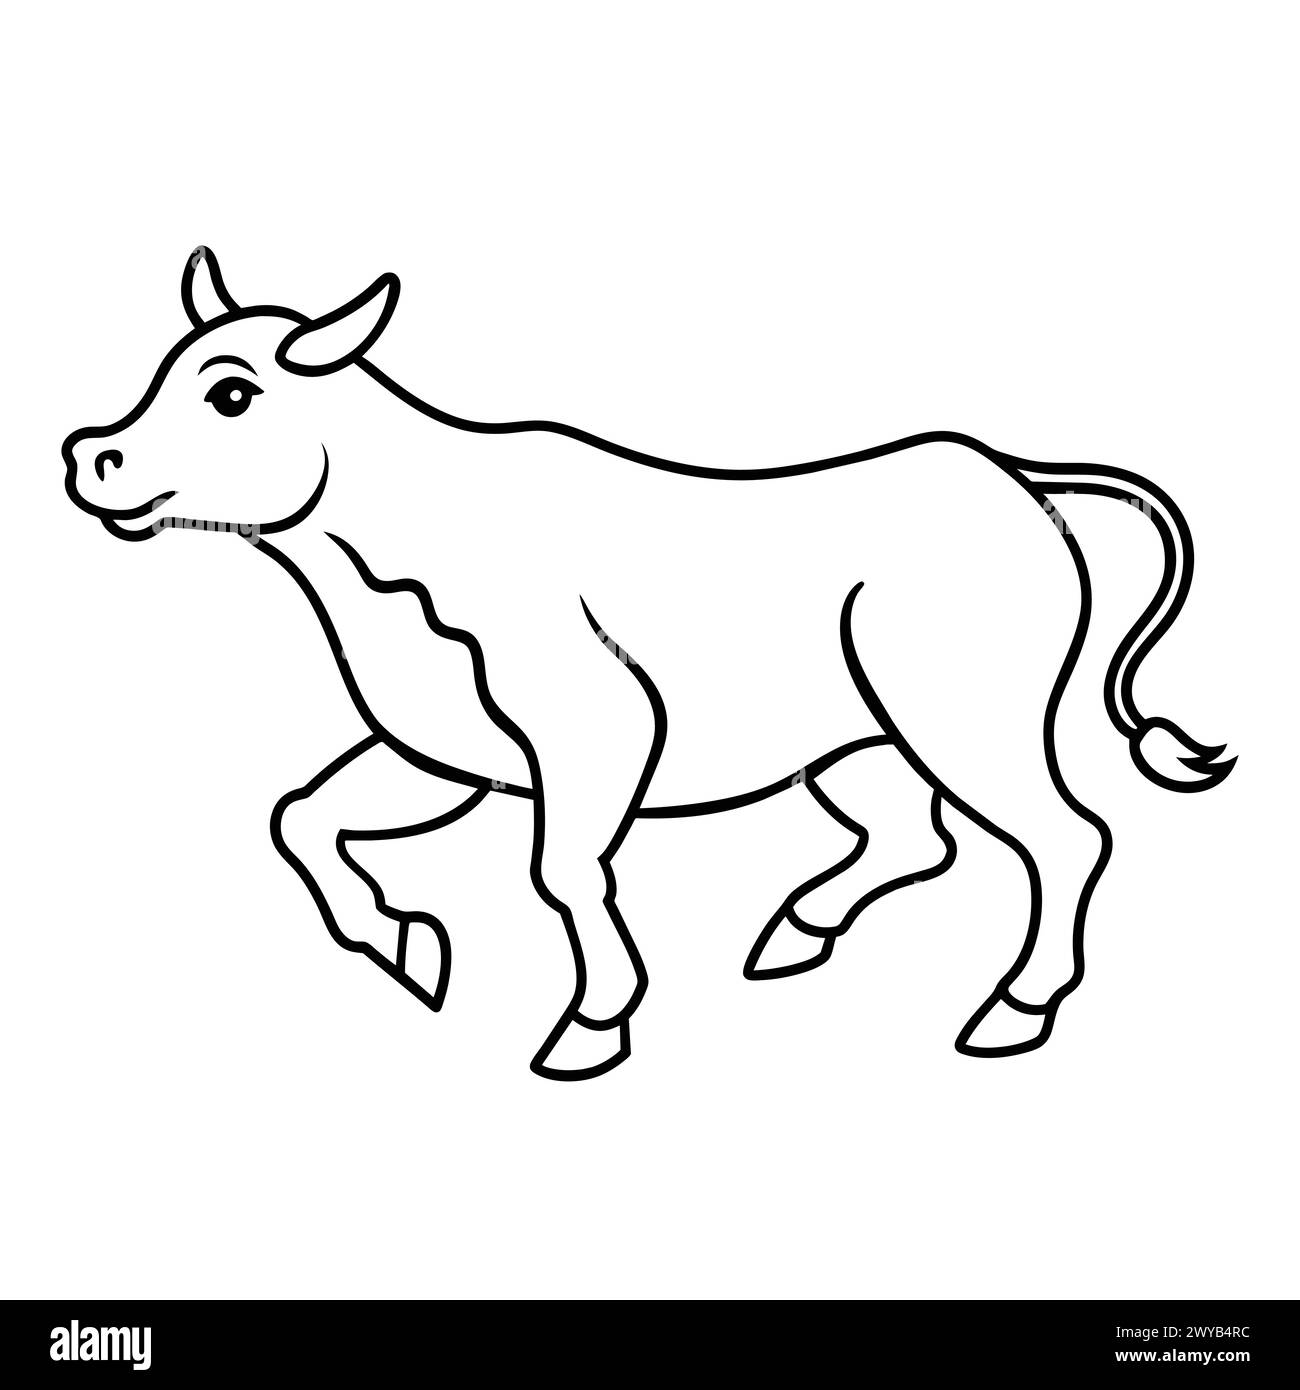 COW LINE ART DESIGN Stock Vector